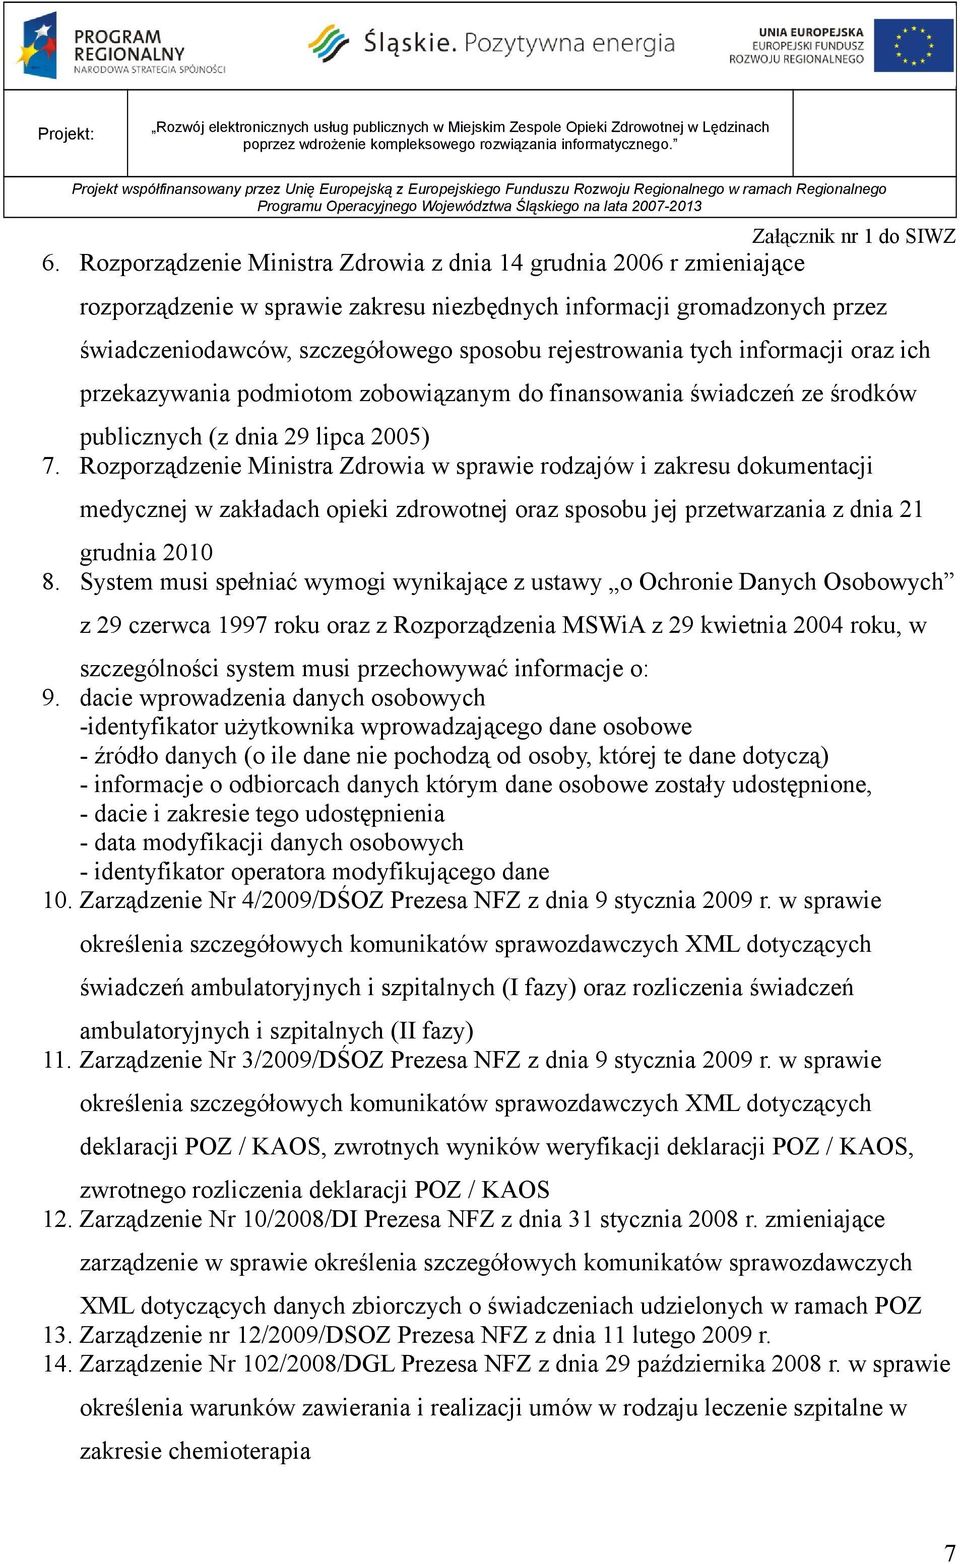 Rzprządzenie Ministra Zdrwia w sprawie rdzajów i zakresu dkumentacji medycznej w zakładach pieki zdrwtnej raz spsbu jej przetwarzania z dnia 21 grudnia 2010 8.